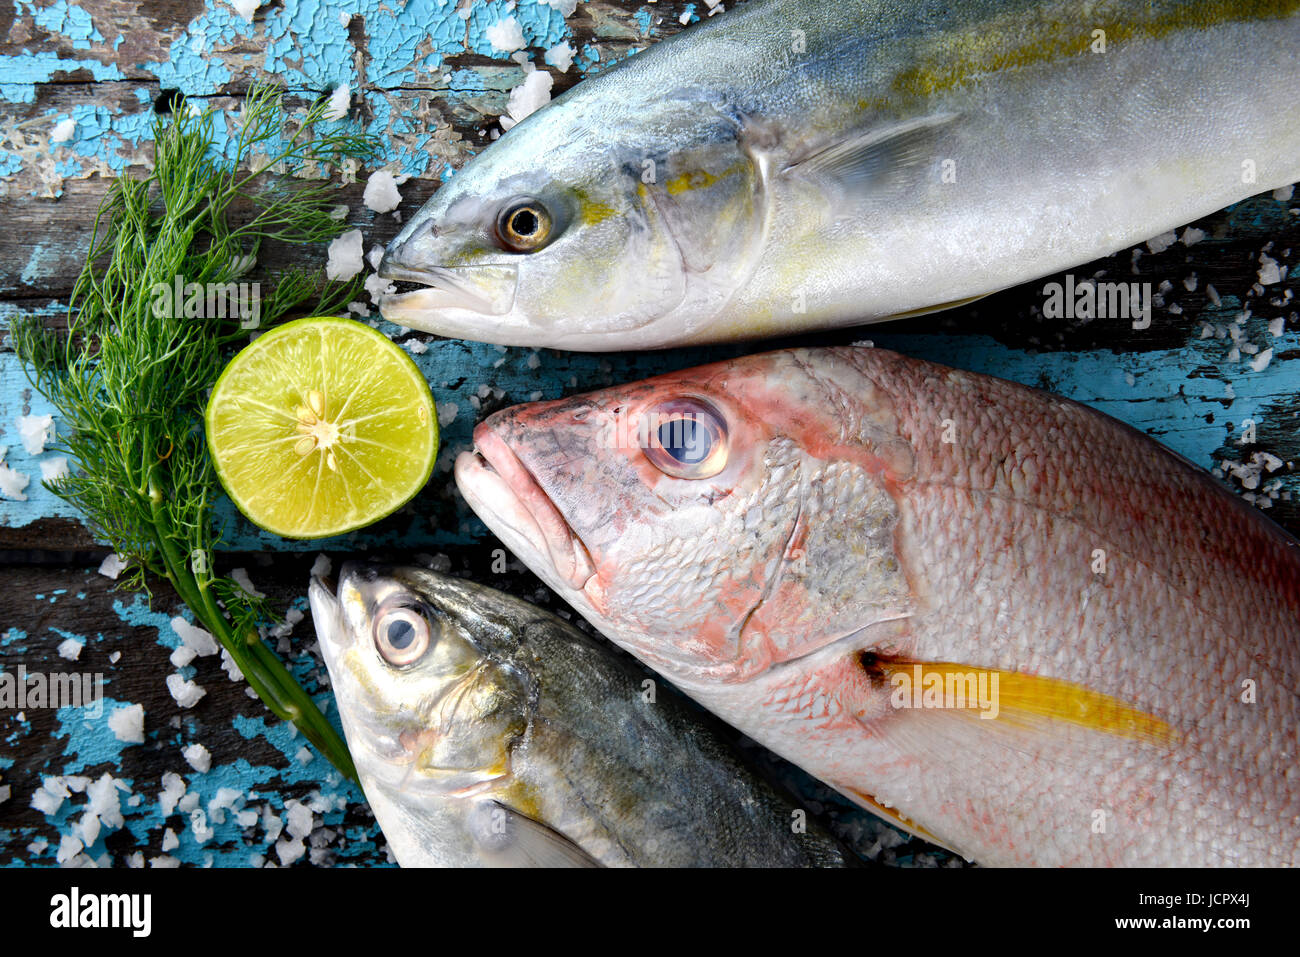 Red Snapper Fisch Hamachi und Makrelen aus Fischerei Fischmarkt auf Holzteller mit Zitrone und Gemüse. Stockfoto